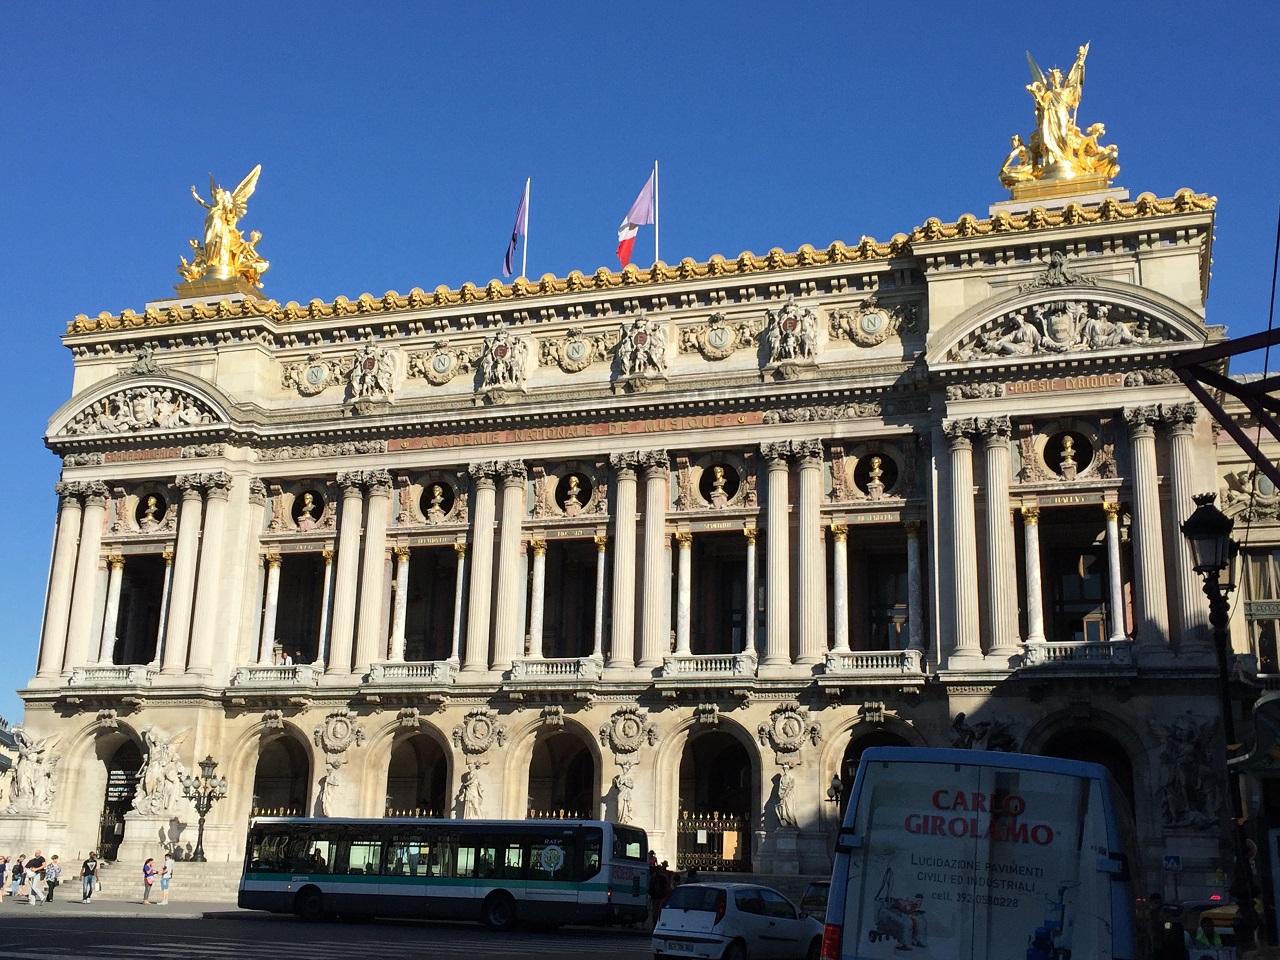 The Paris Opera exterior